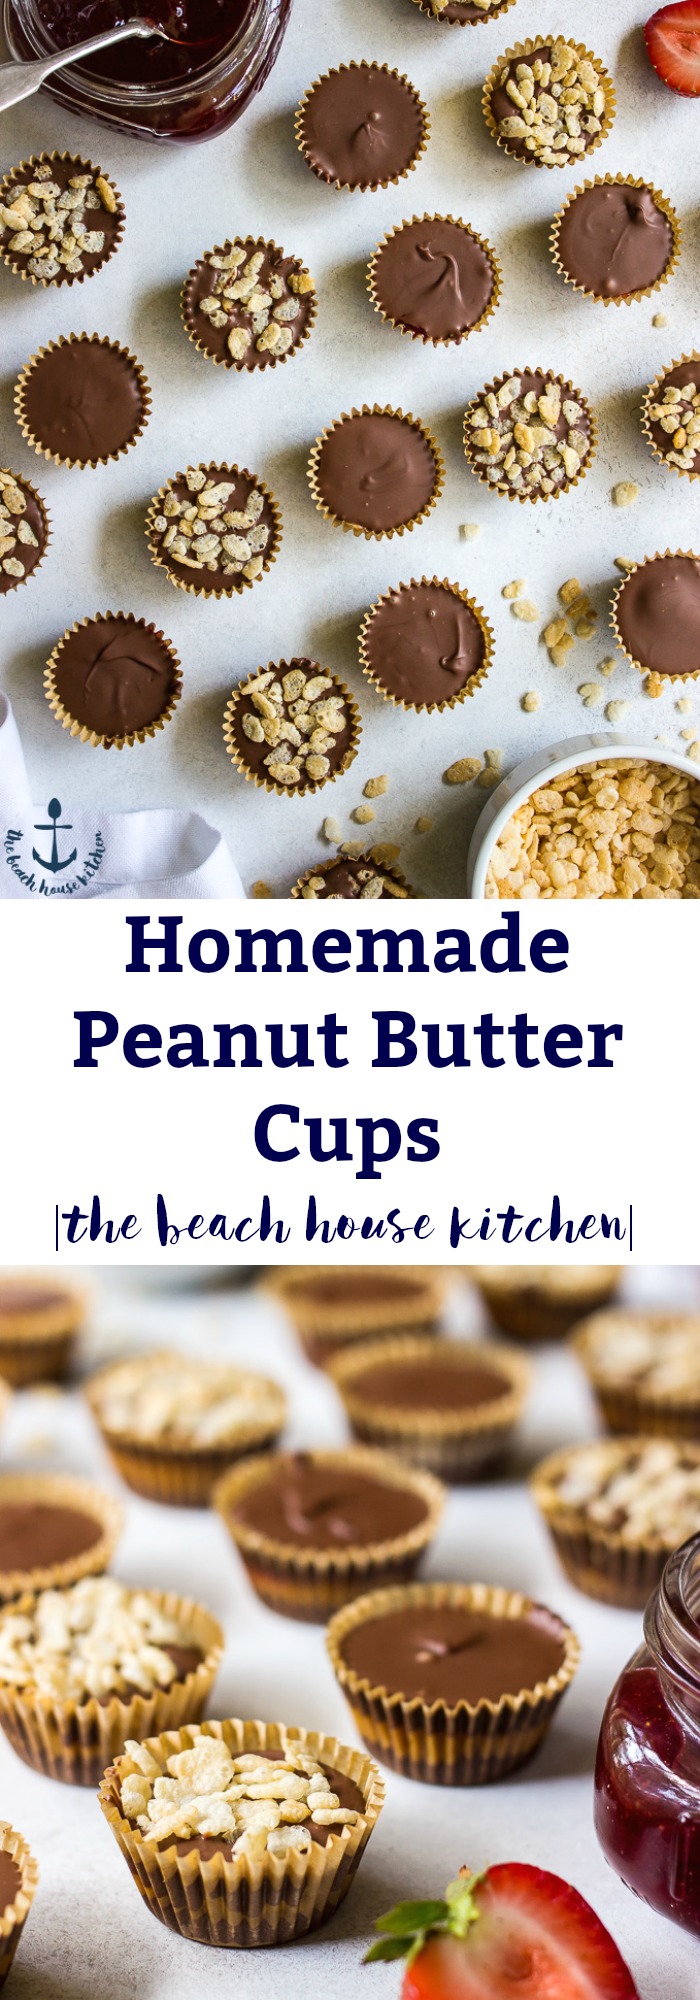 Homemade Peanut Butter Cups